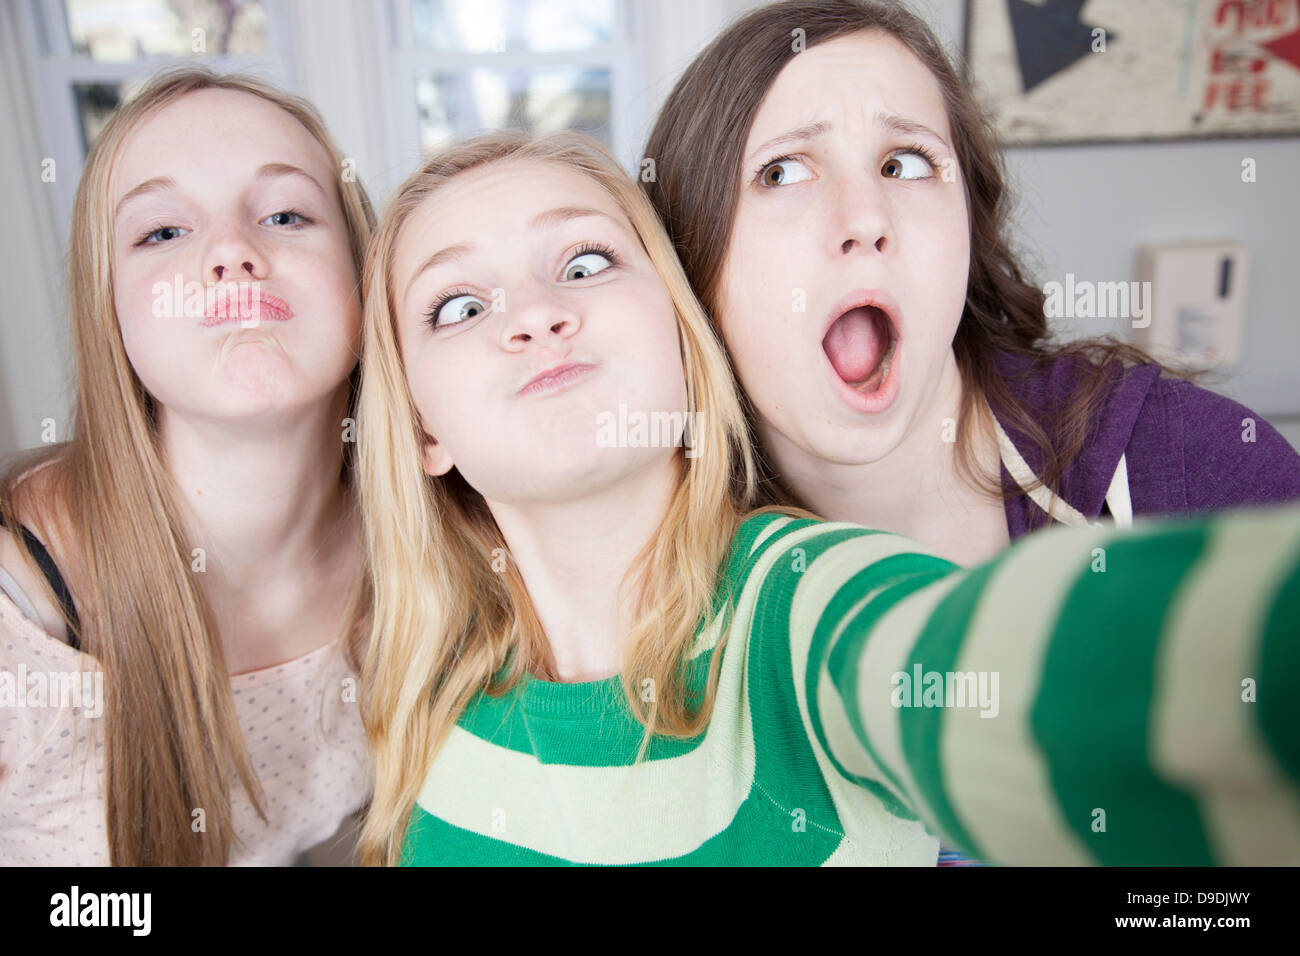 Los adolescentes tirando funny faces Foto de stock